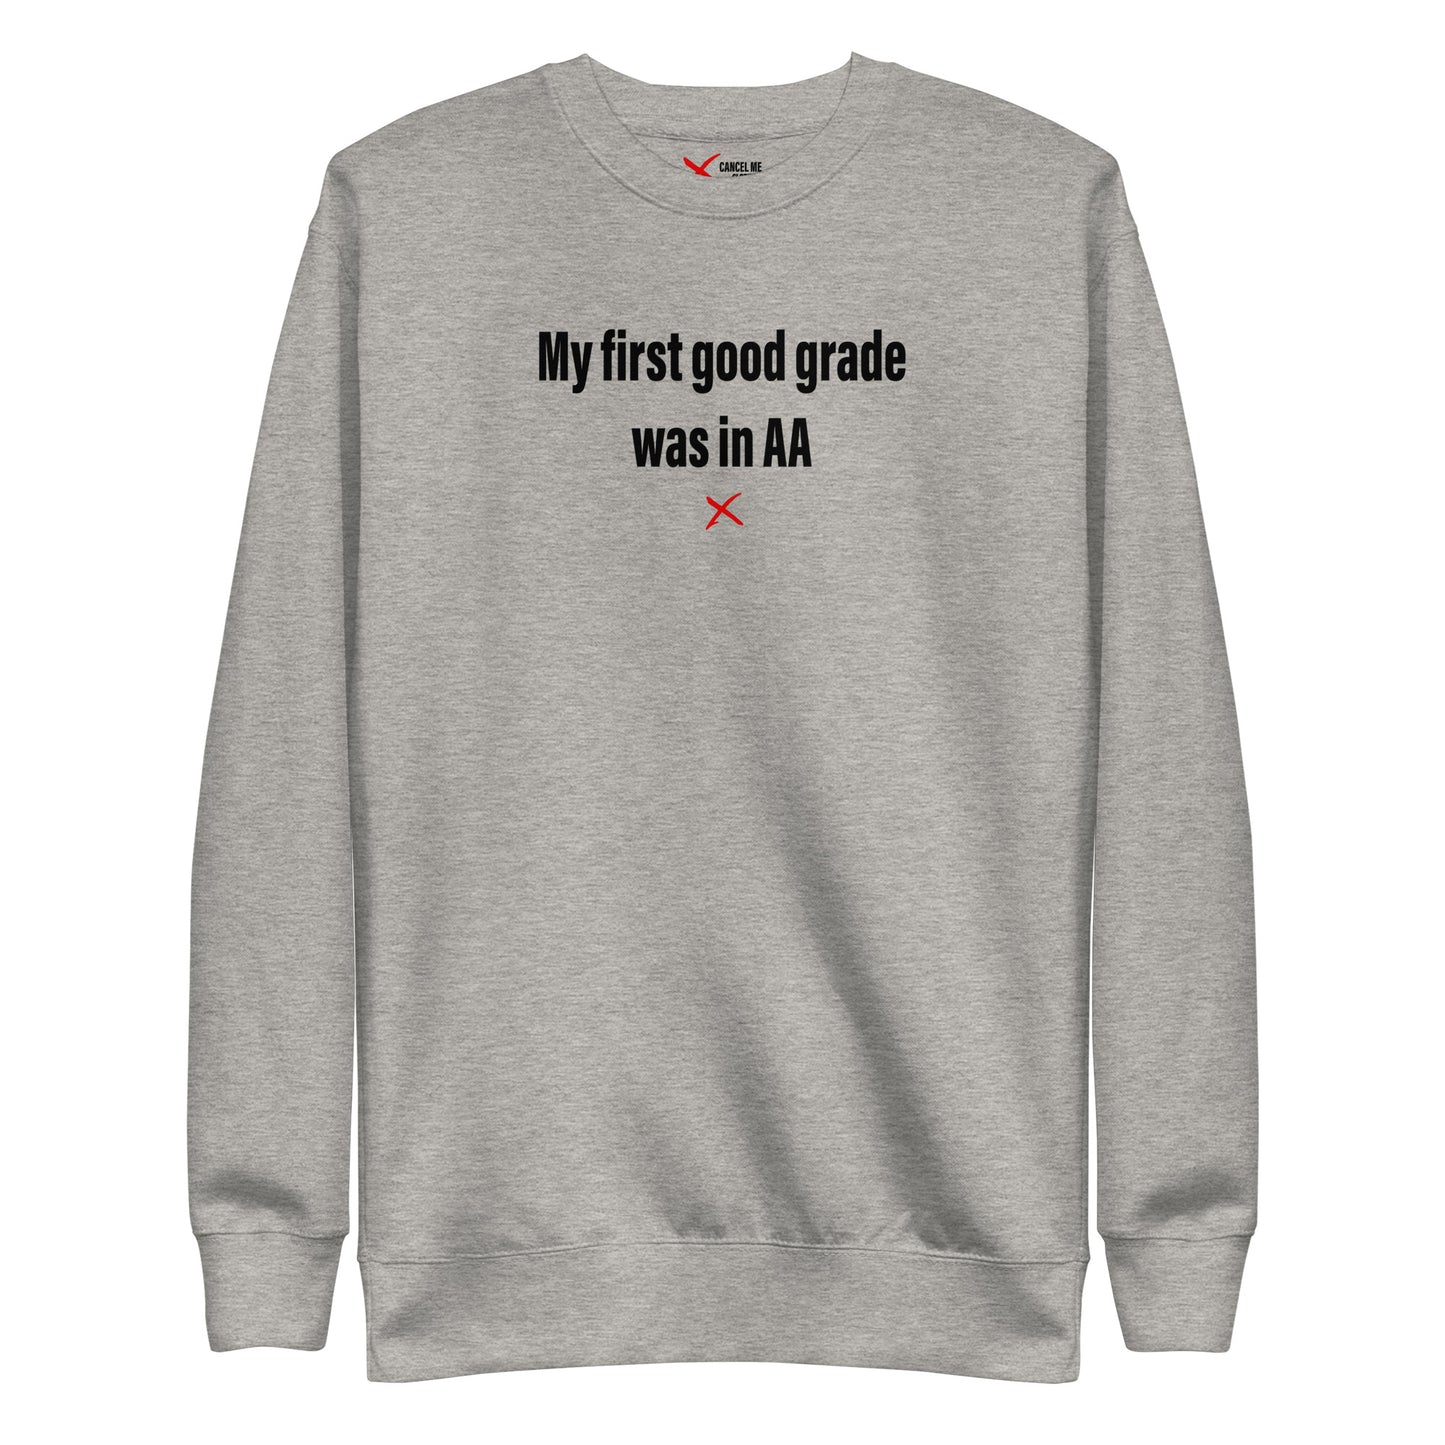 My first good grade was in AA - Sweatshirt